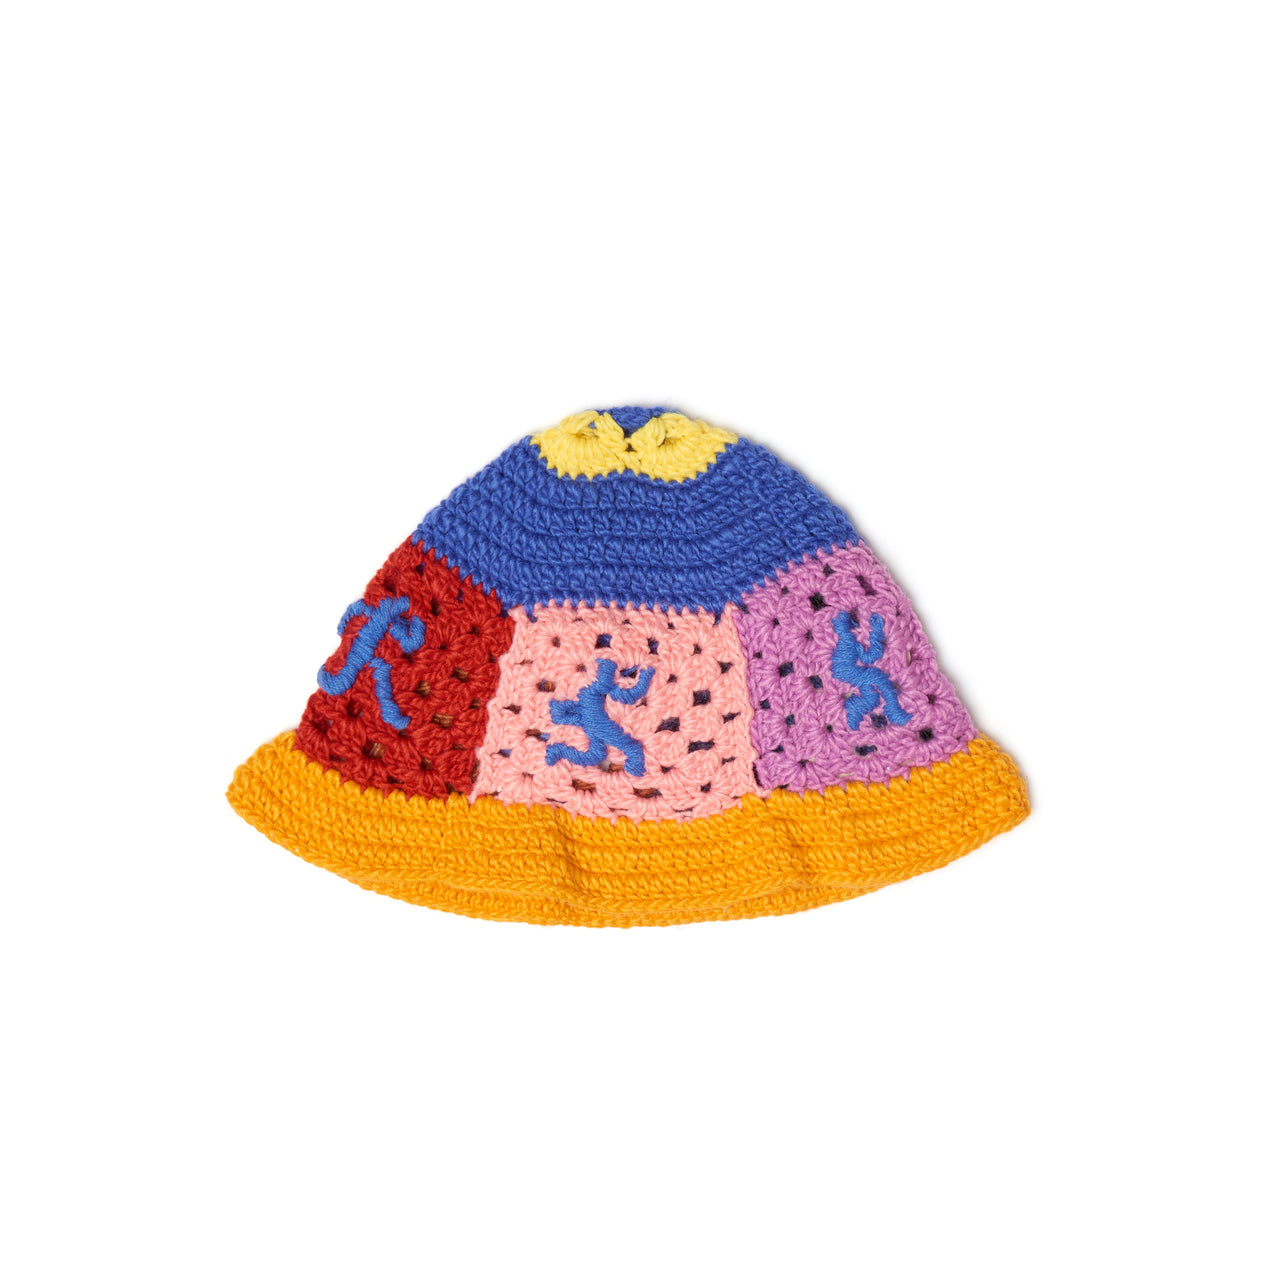 Running Man Crochet Hat [Multi]